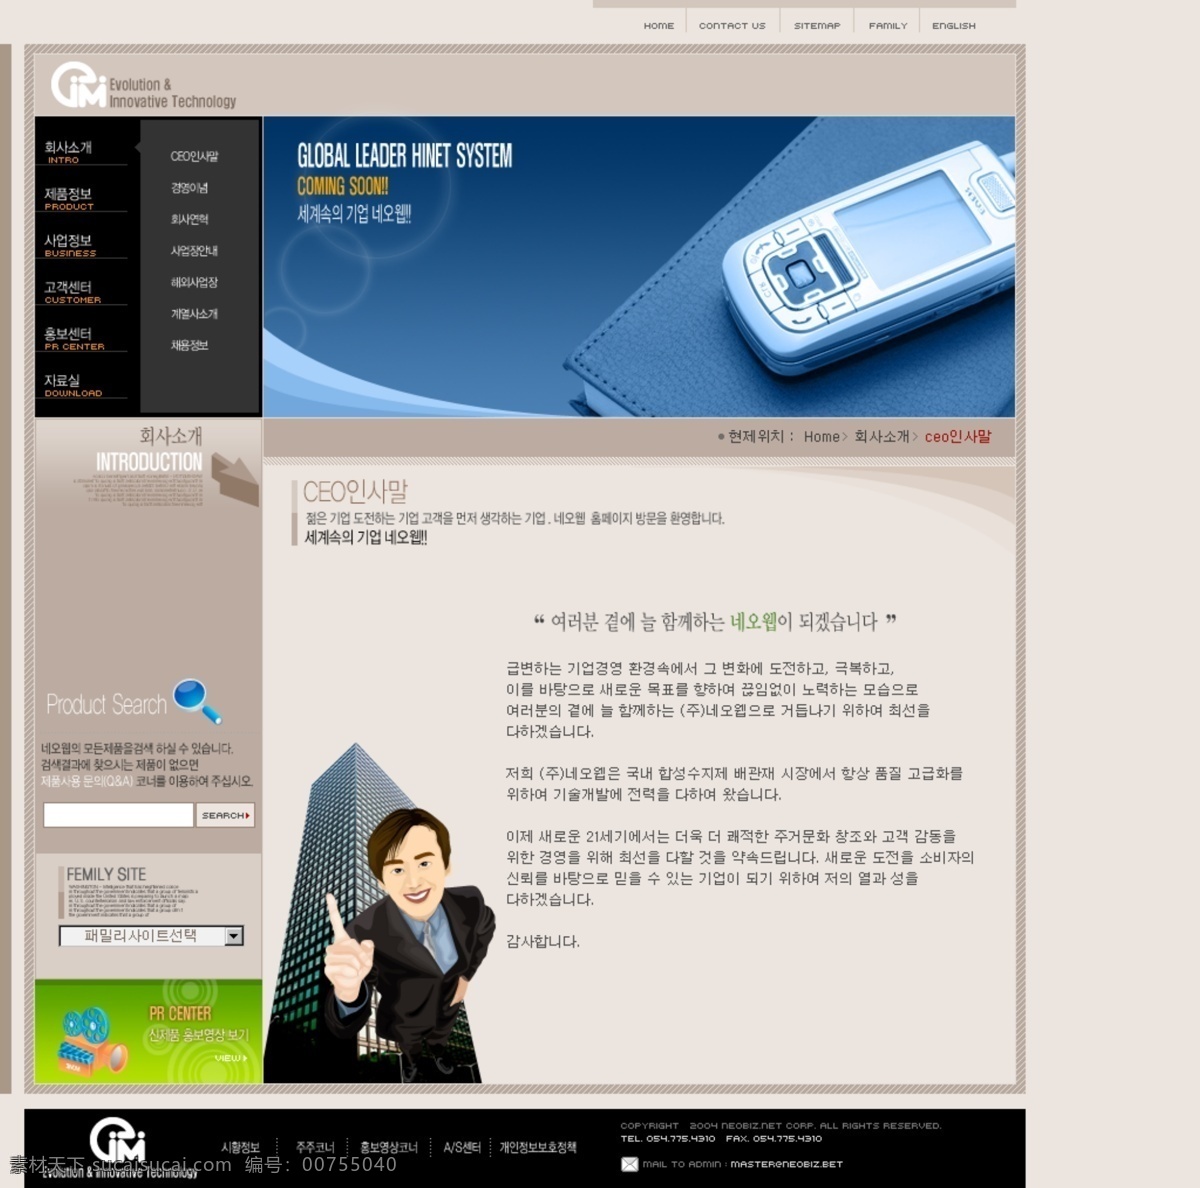 分层 源文件 psd格式 psd素材 韩国模板 韩国网站 韩国 网站 模版 网页模板 免费素材 企业站模板 网页设计 网站模板 网站设计 网页素材